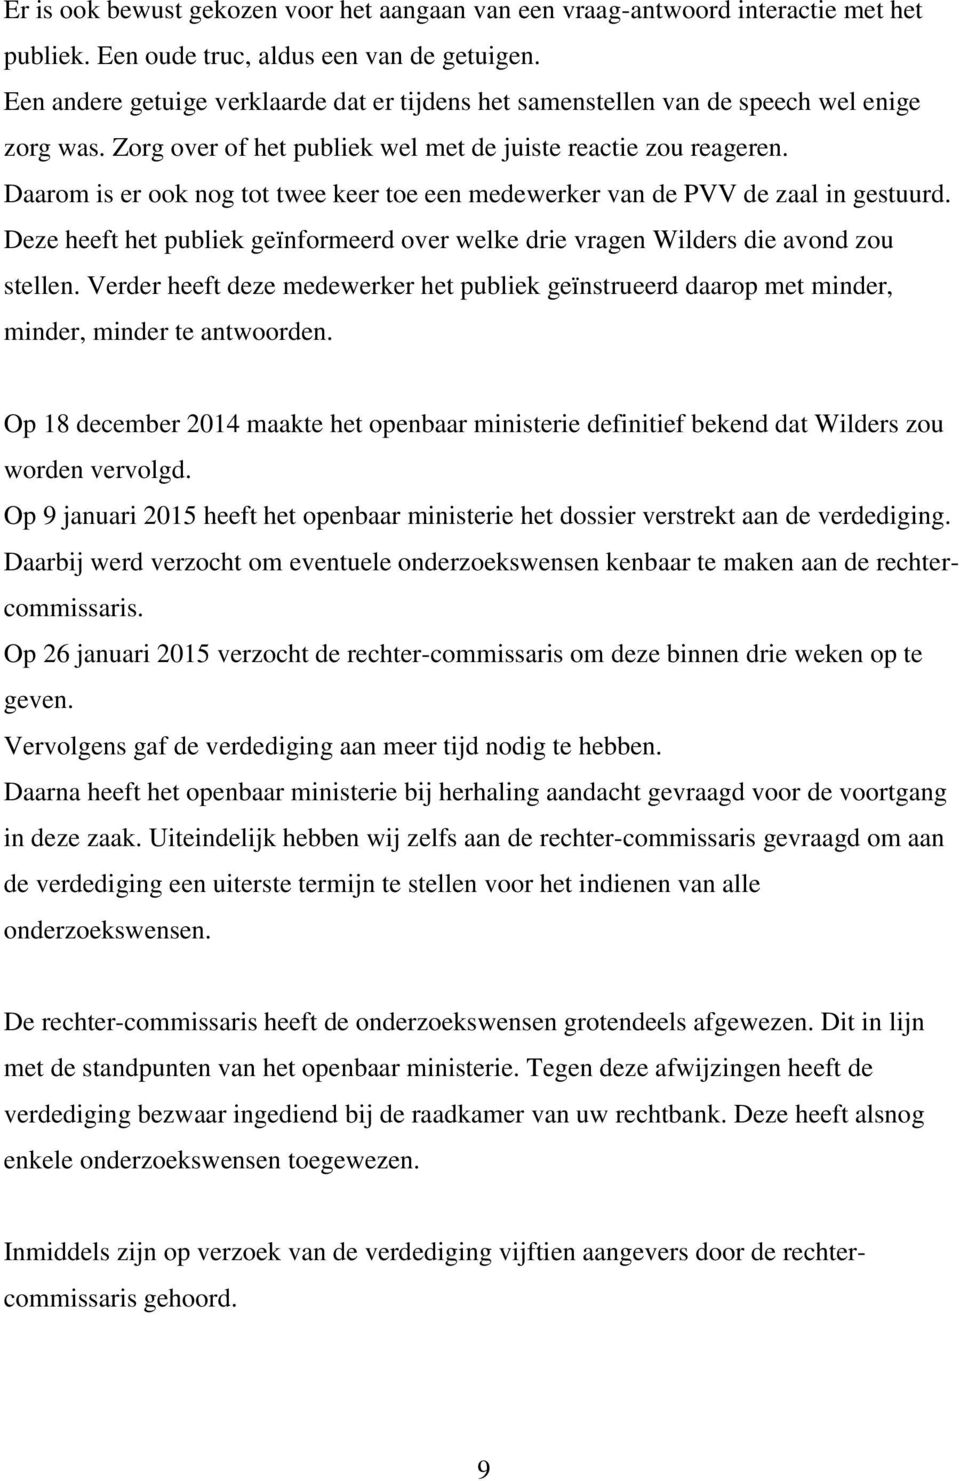 Daarom is er ook nog tot twee keer toe een medewerker van de PVV de zaal in gestuurd. Deze heeft het publiek geïnformeerd over welke drie vragen Wilders die avond zou stellen.